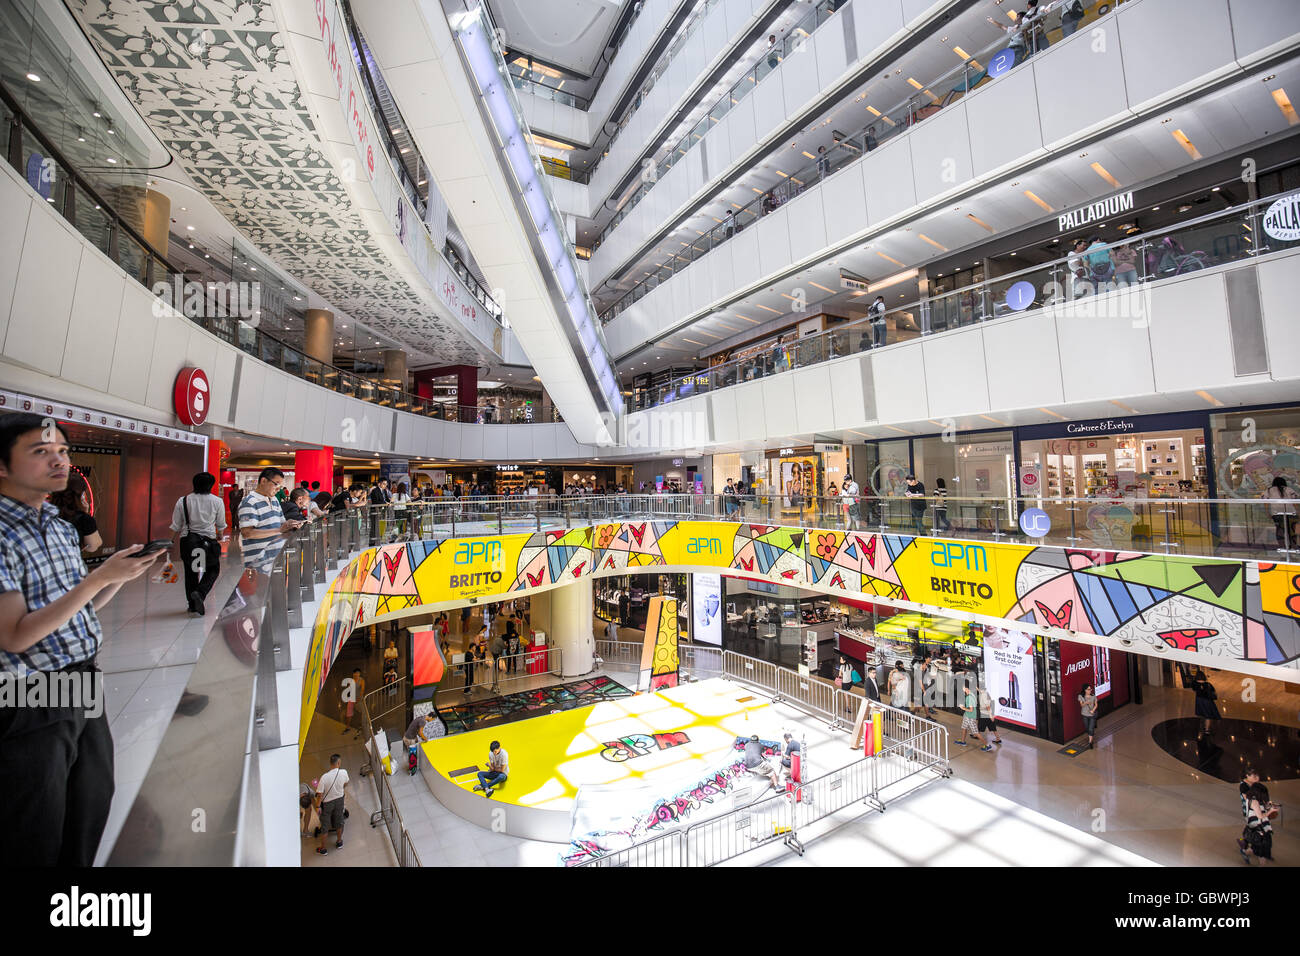 Kwun Tong Hong Kong July 07 2016 People Shopping Inside Apm Shopping Mall In Kwun Tong 